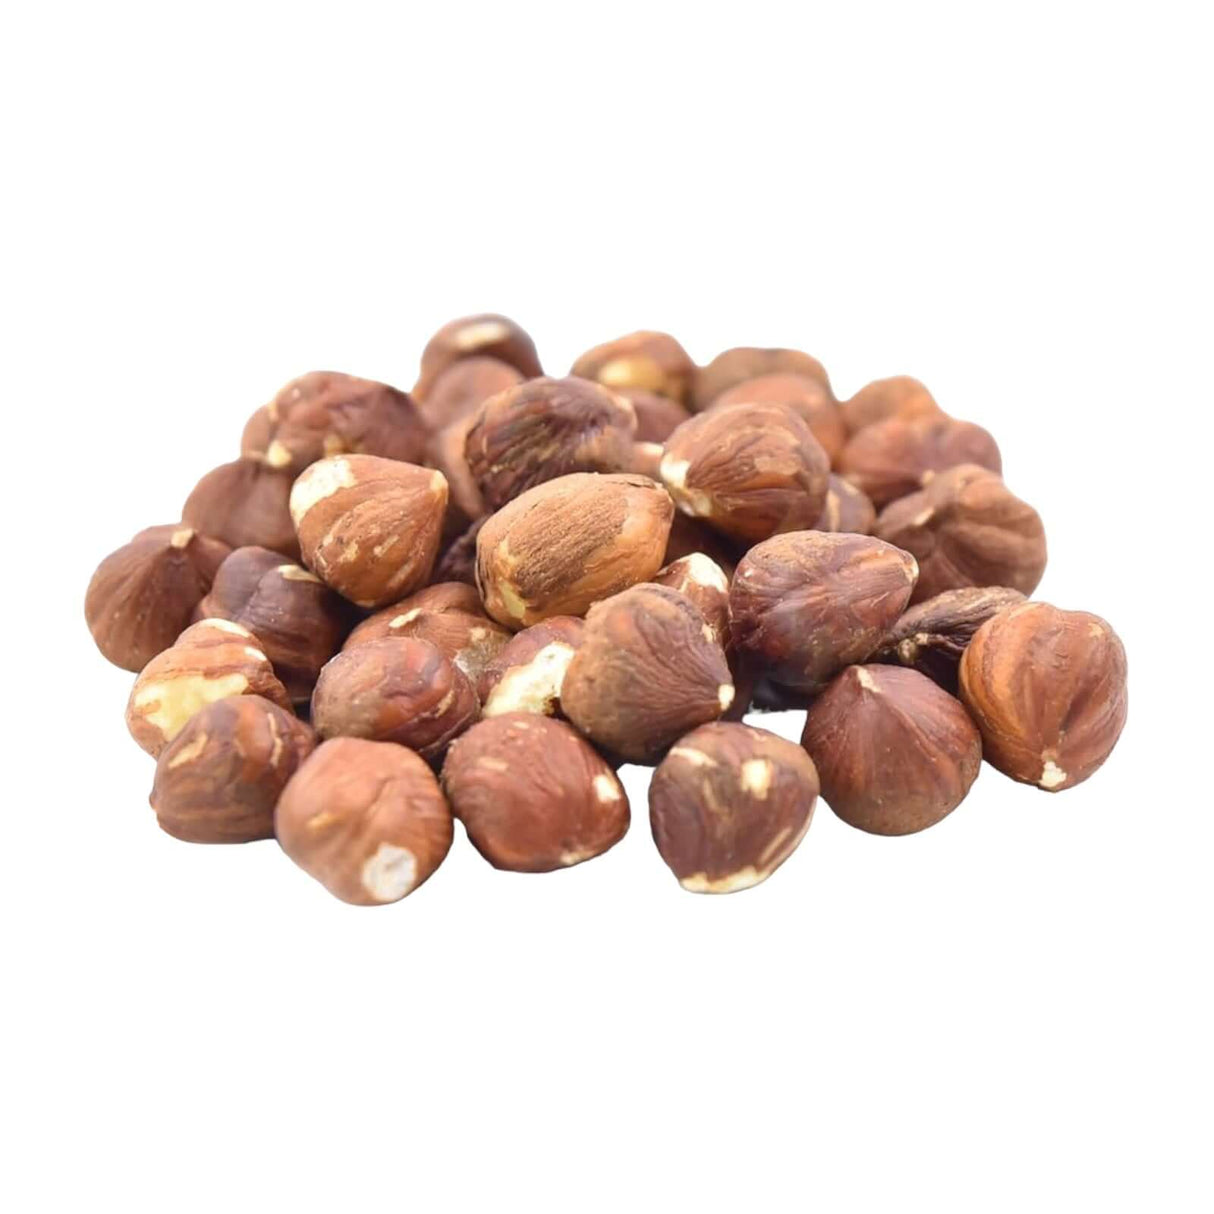 Raw Hazelnuts